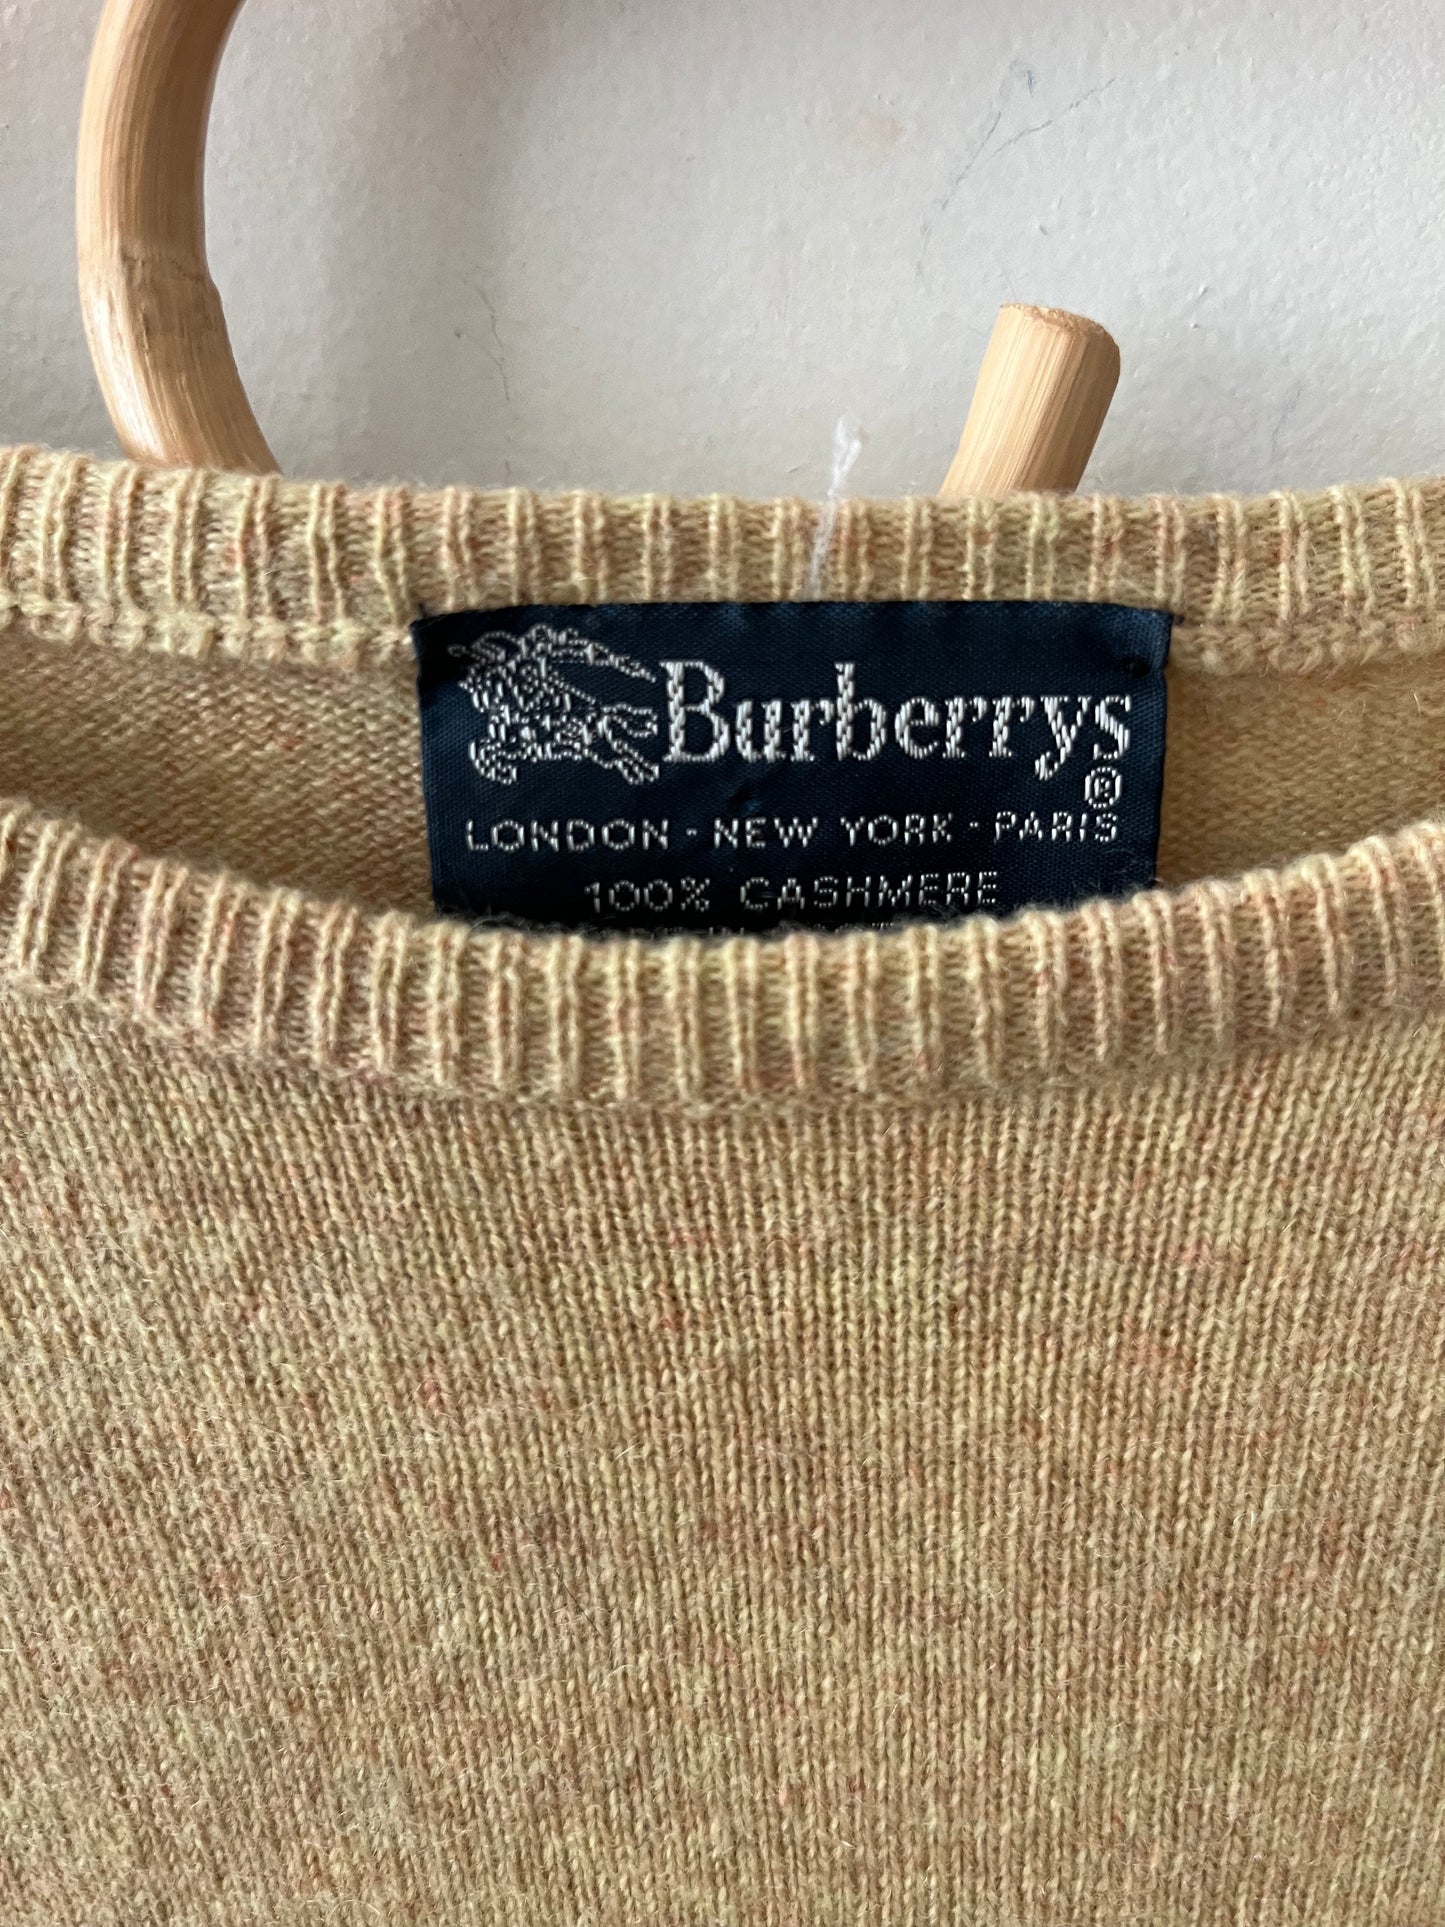 Burberry Cashmere Jumper Sweater | M/L